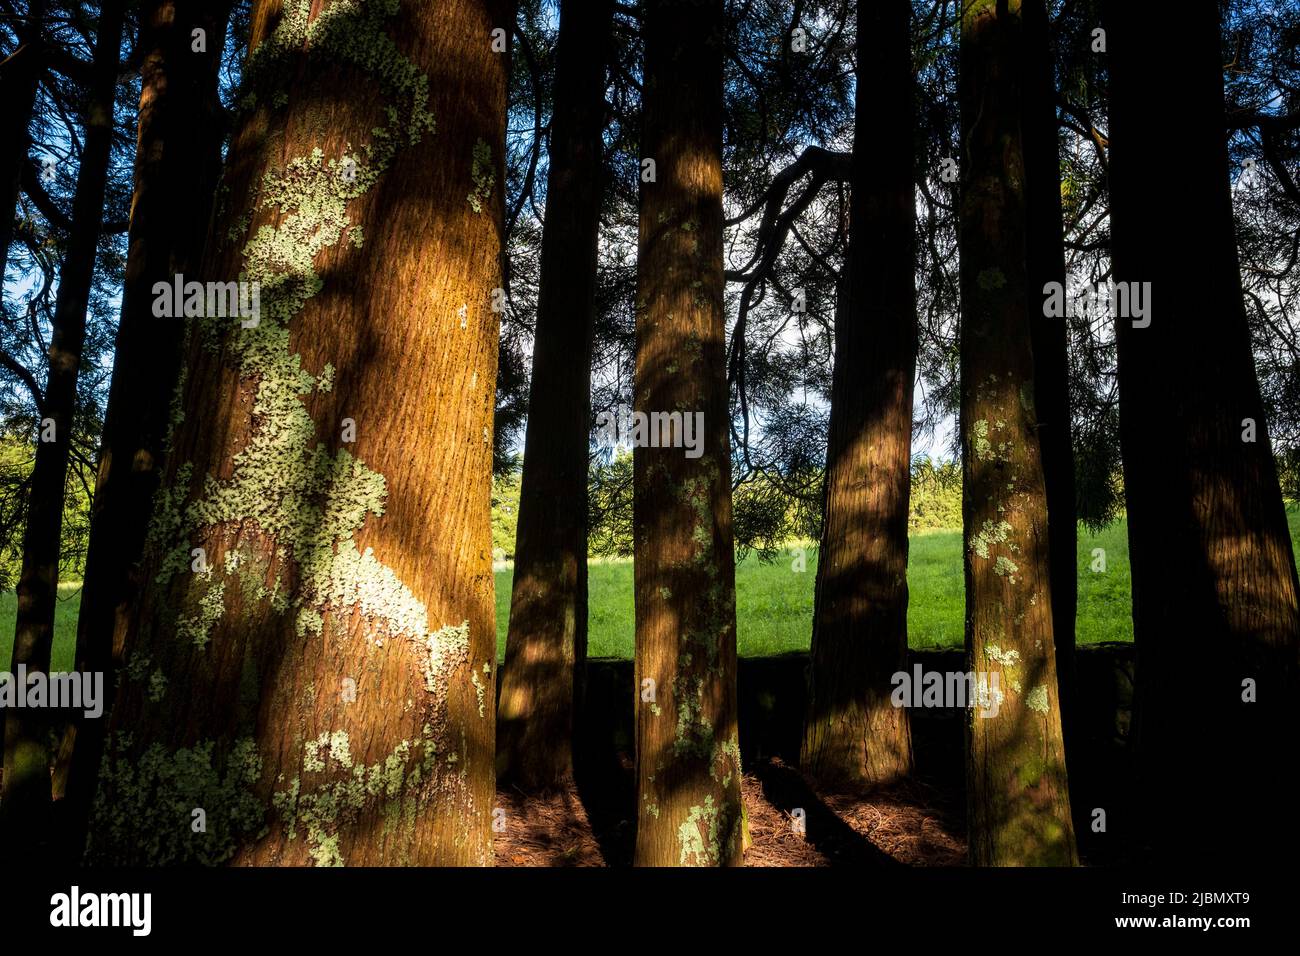 São Jorge, Portugal - 12. August 2021 : Bäume im Parque Florestal das Sete Fontes Stockfoto